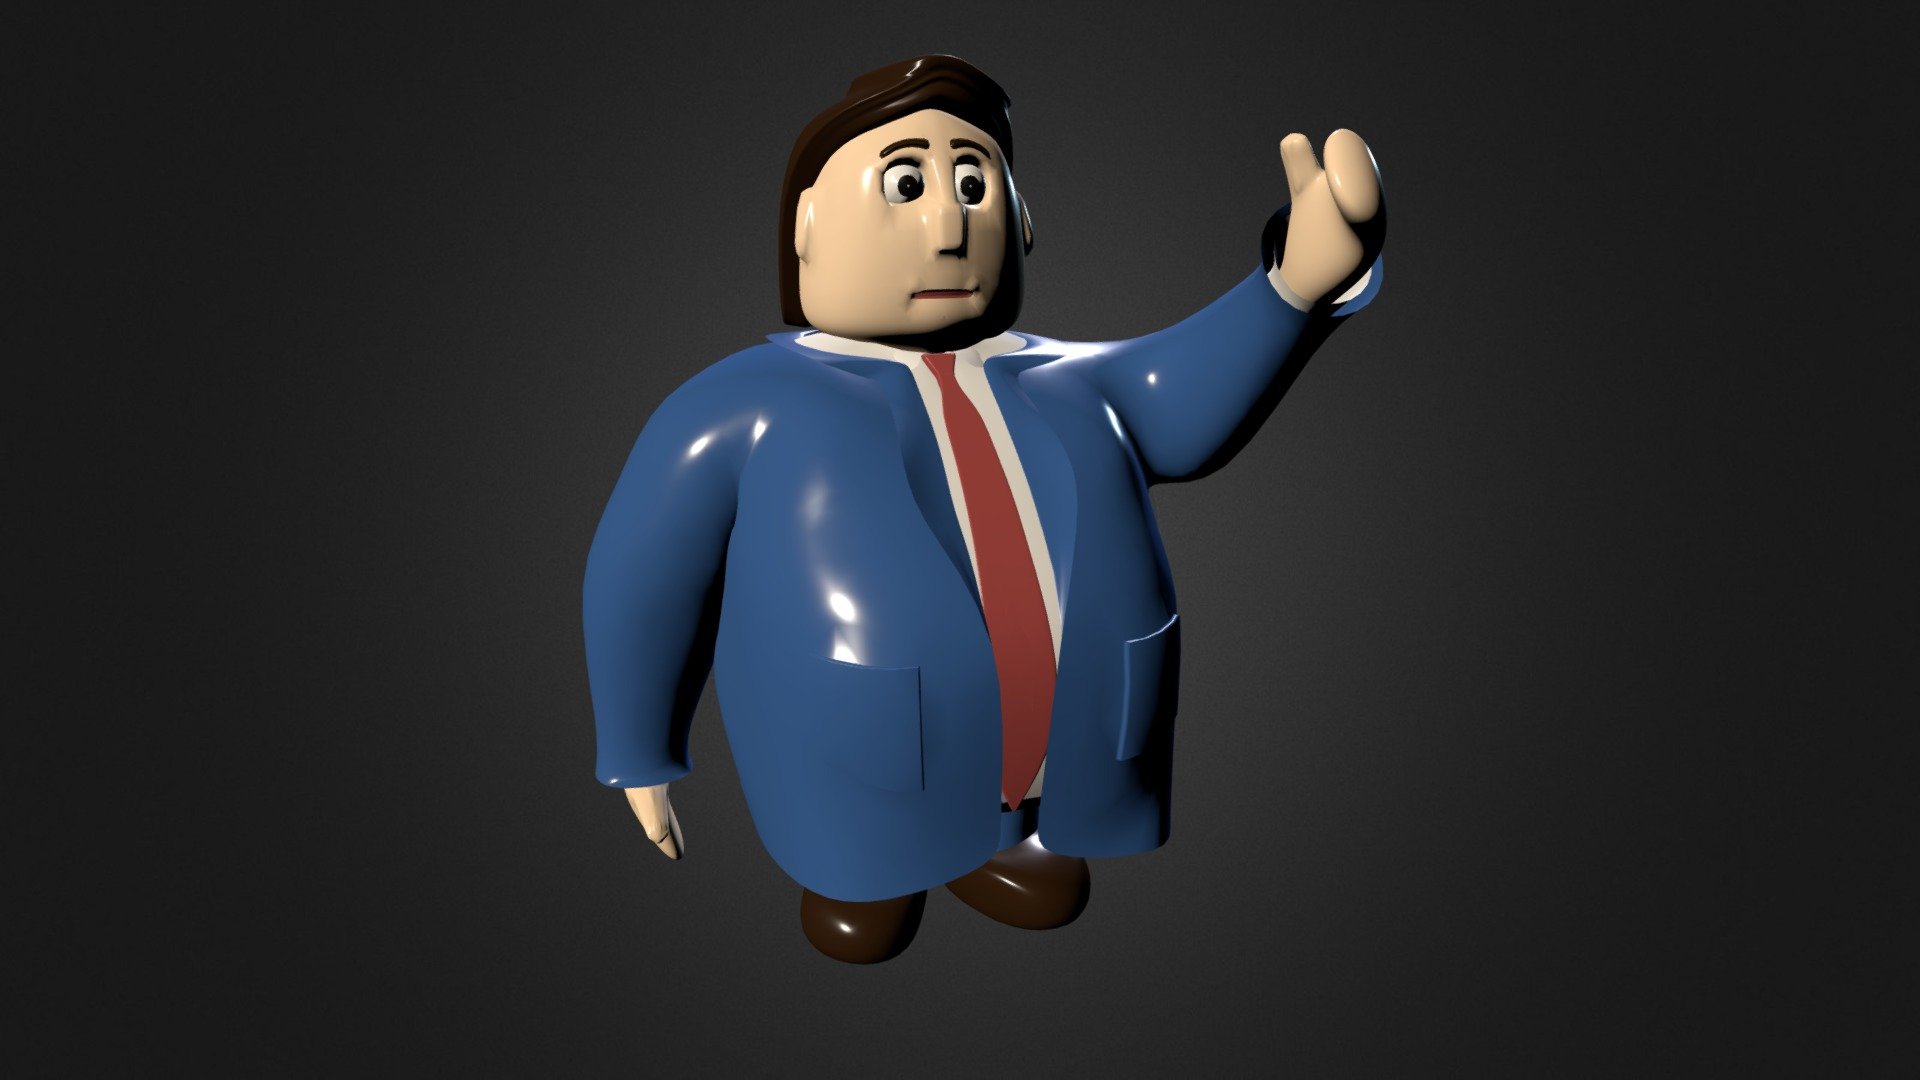 Fat Guy